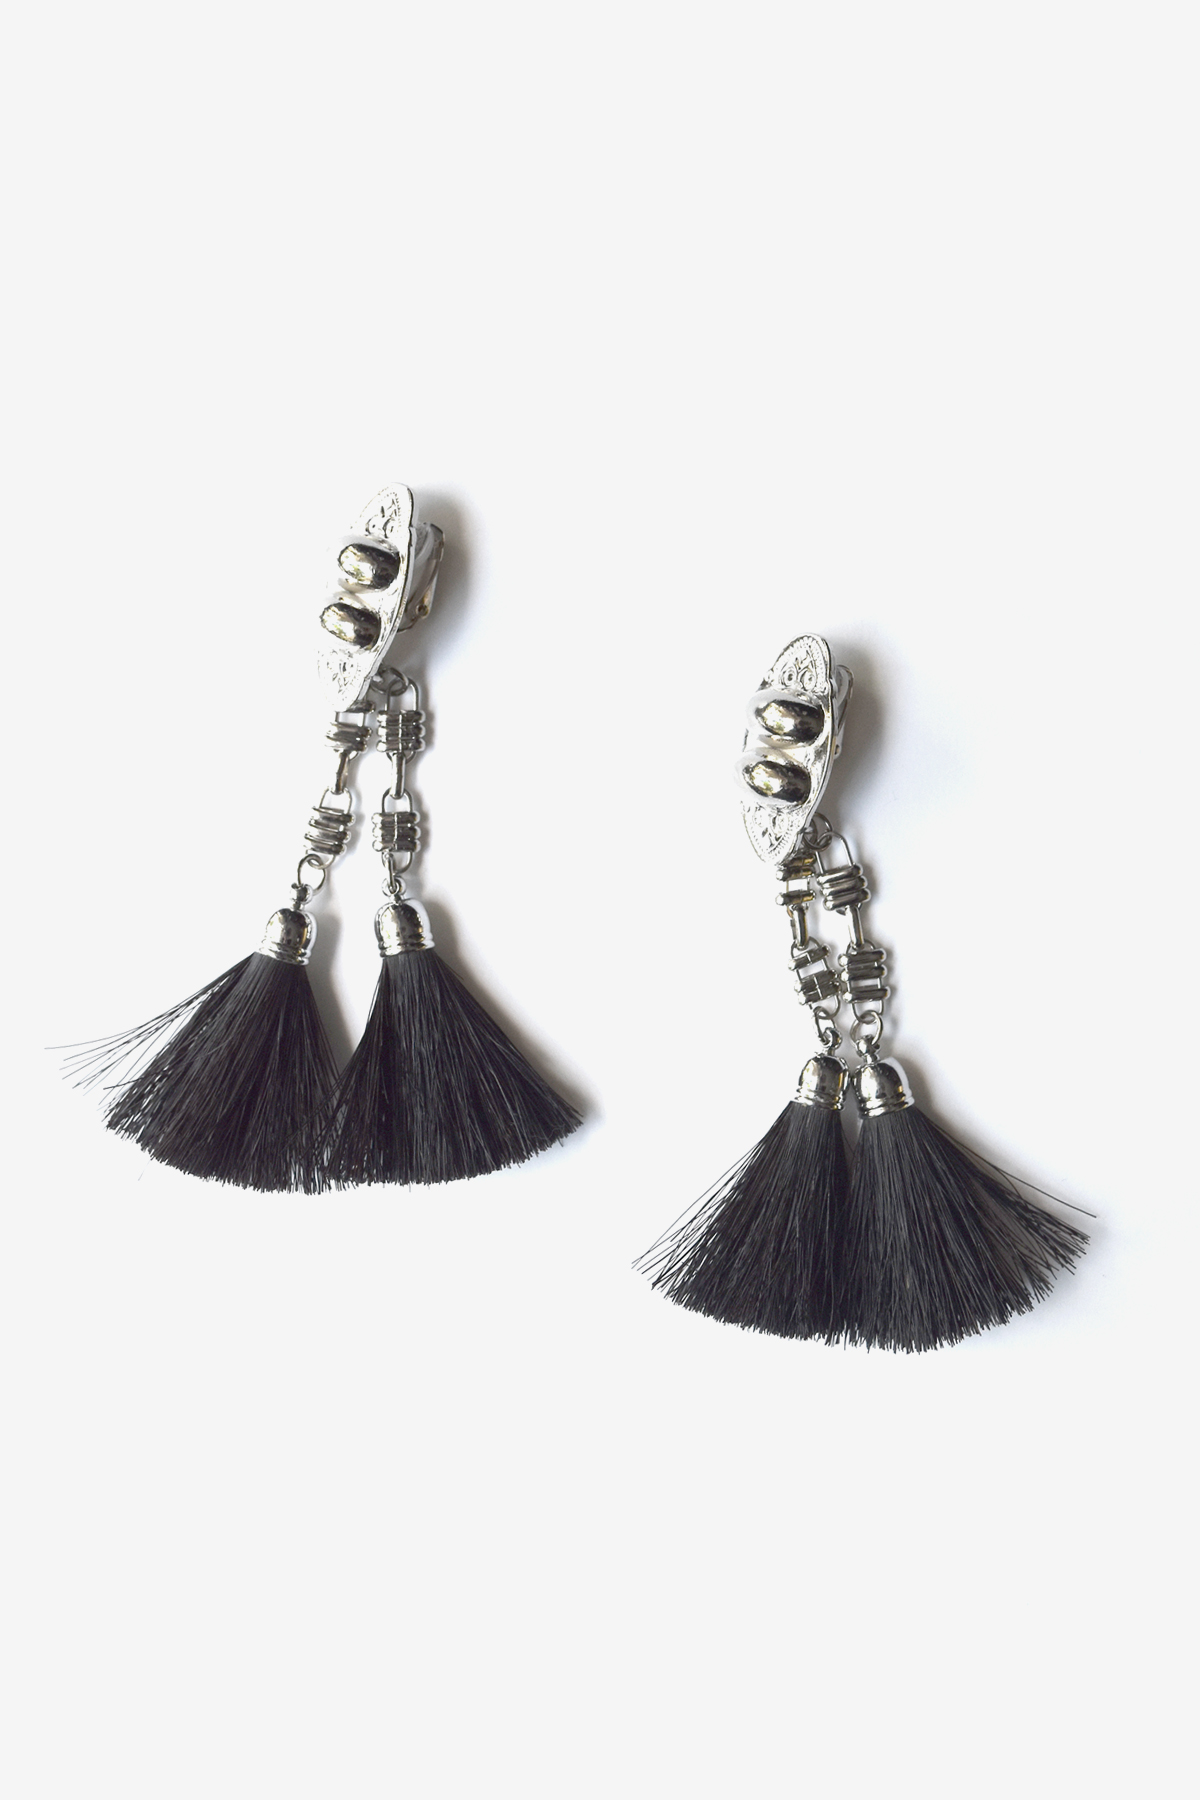 ホースヘア日本色定価1.7万 TOGA PULLA fringe earrings ブラック